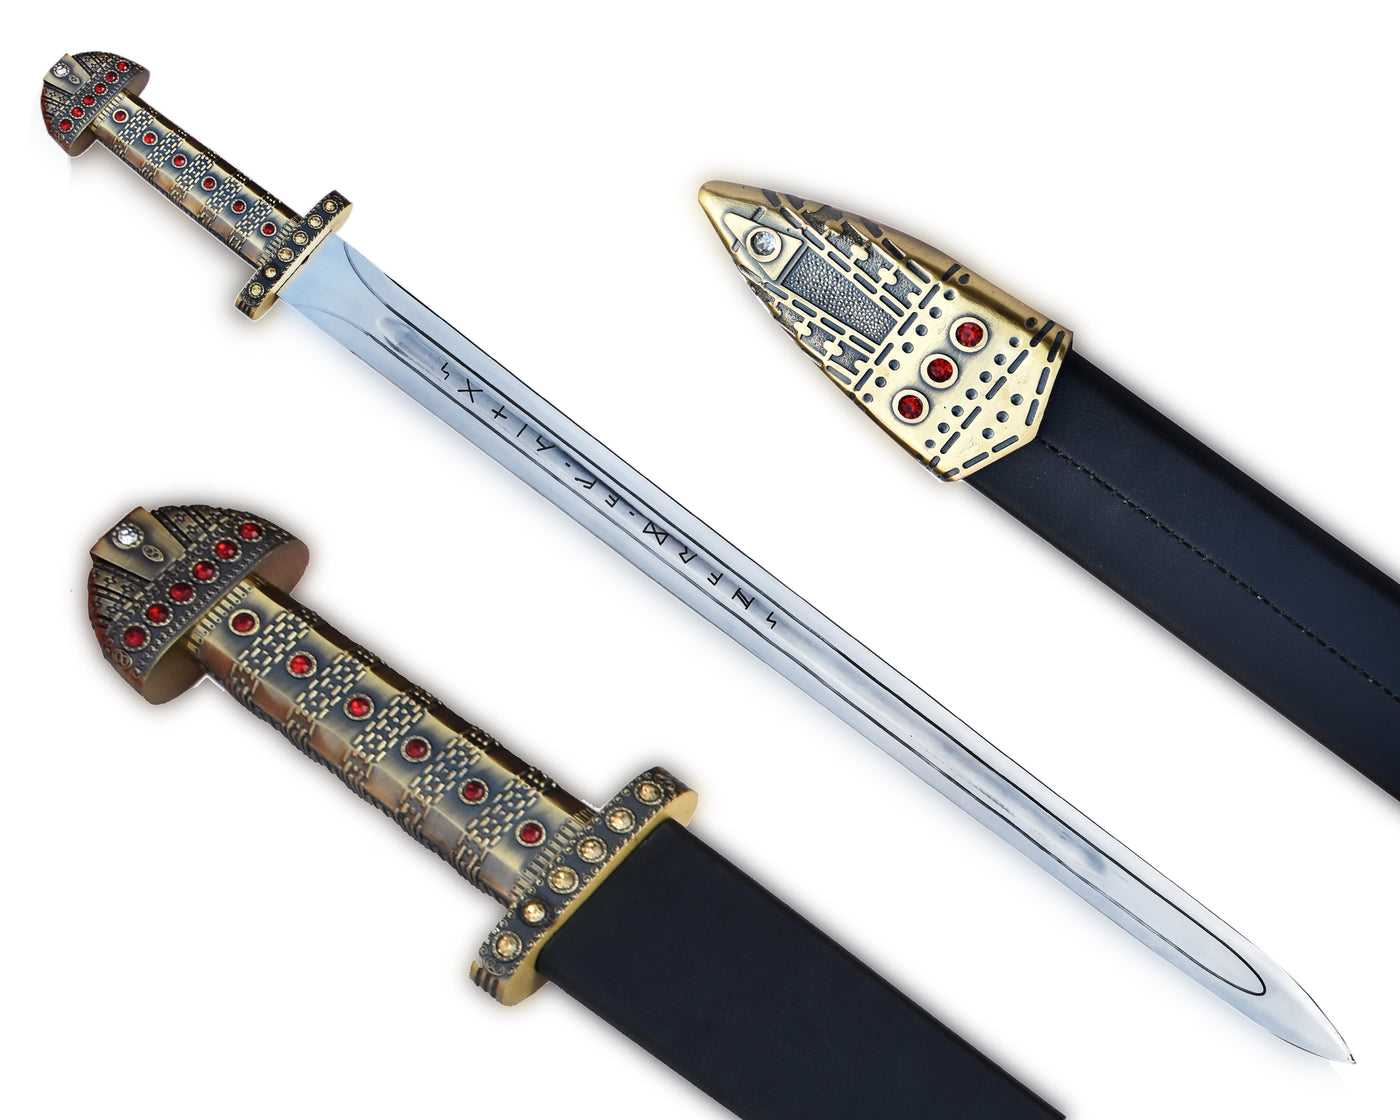  Ragnar Lothbrok Sword & Axe Vikings Sword of Kings